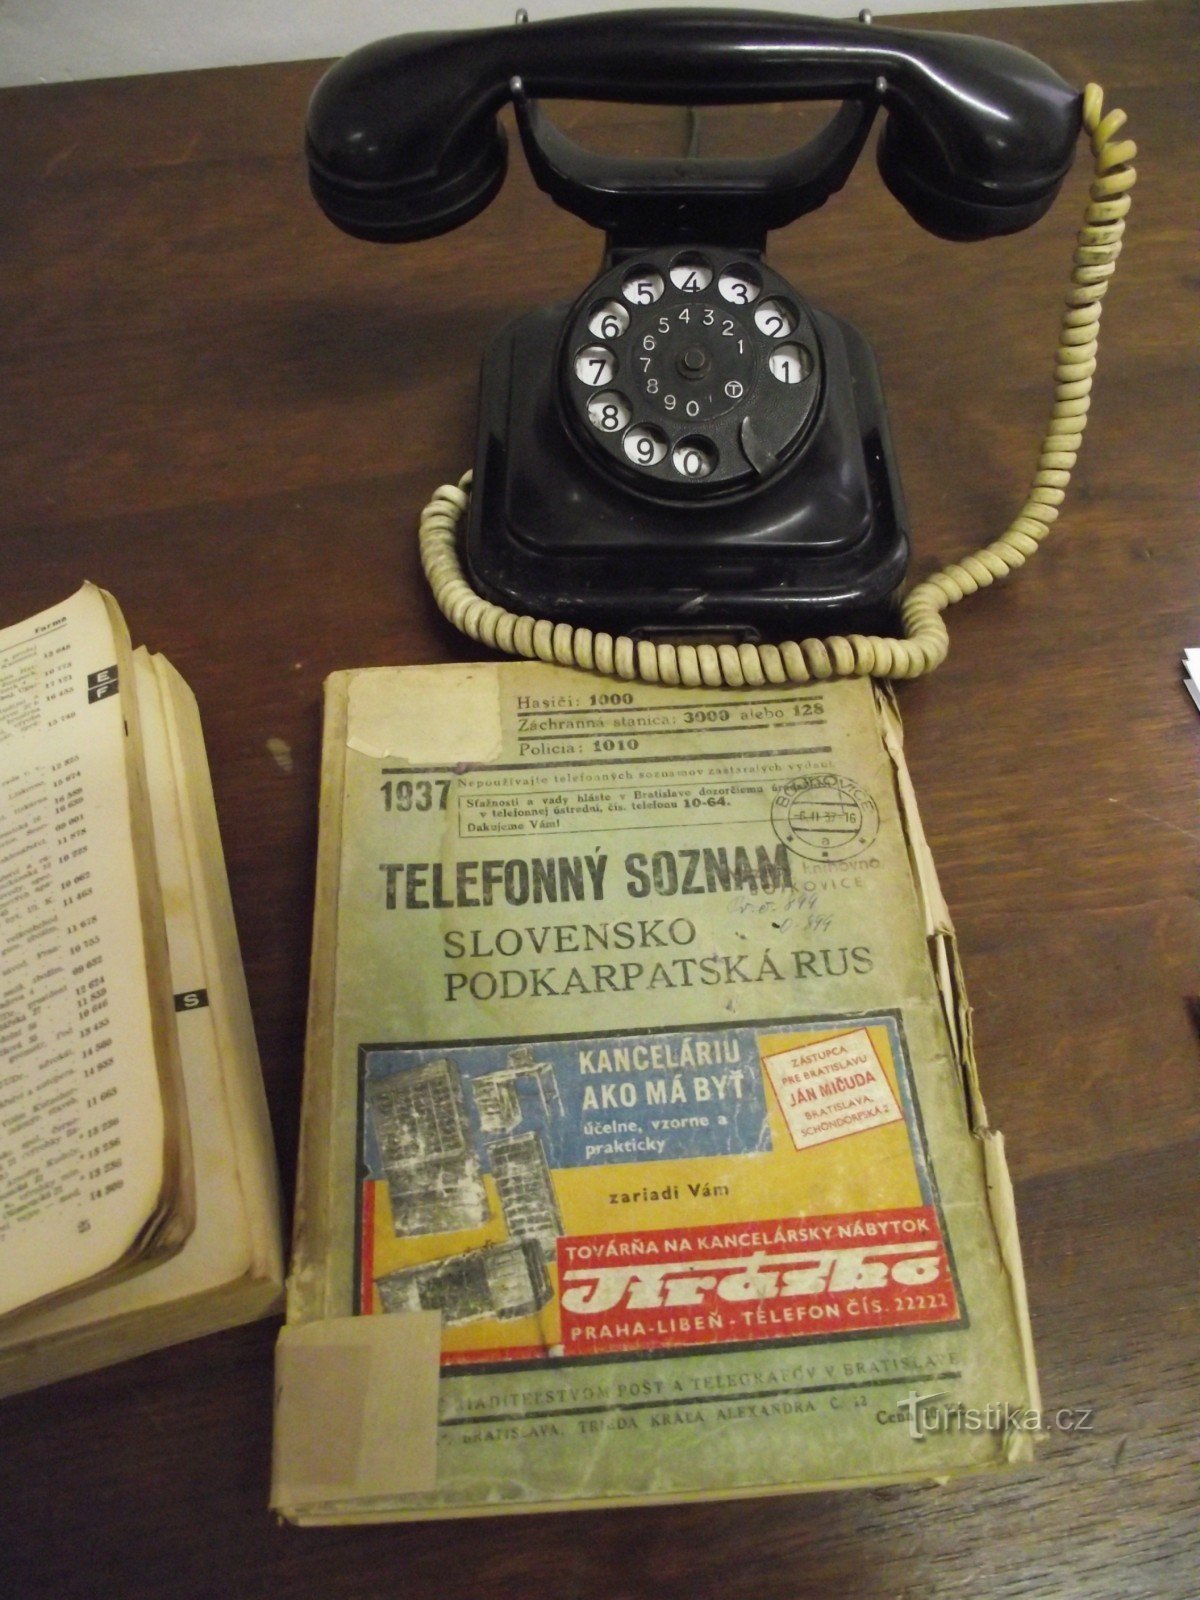 da exposição sobre a história dos telemóveis